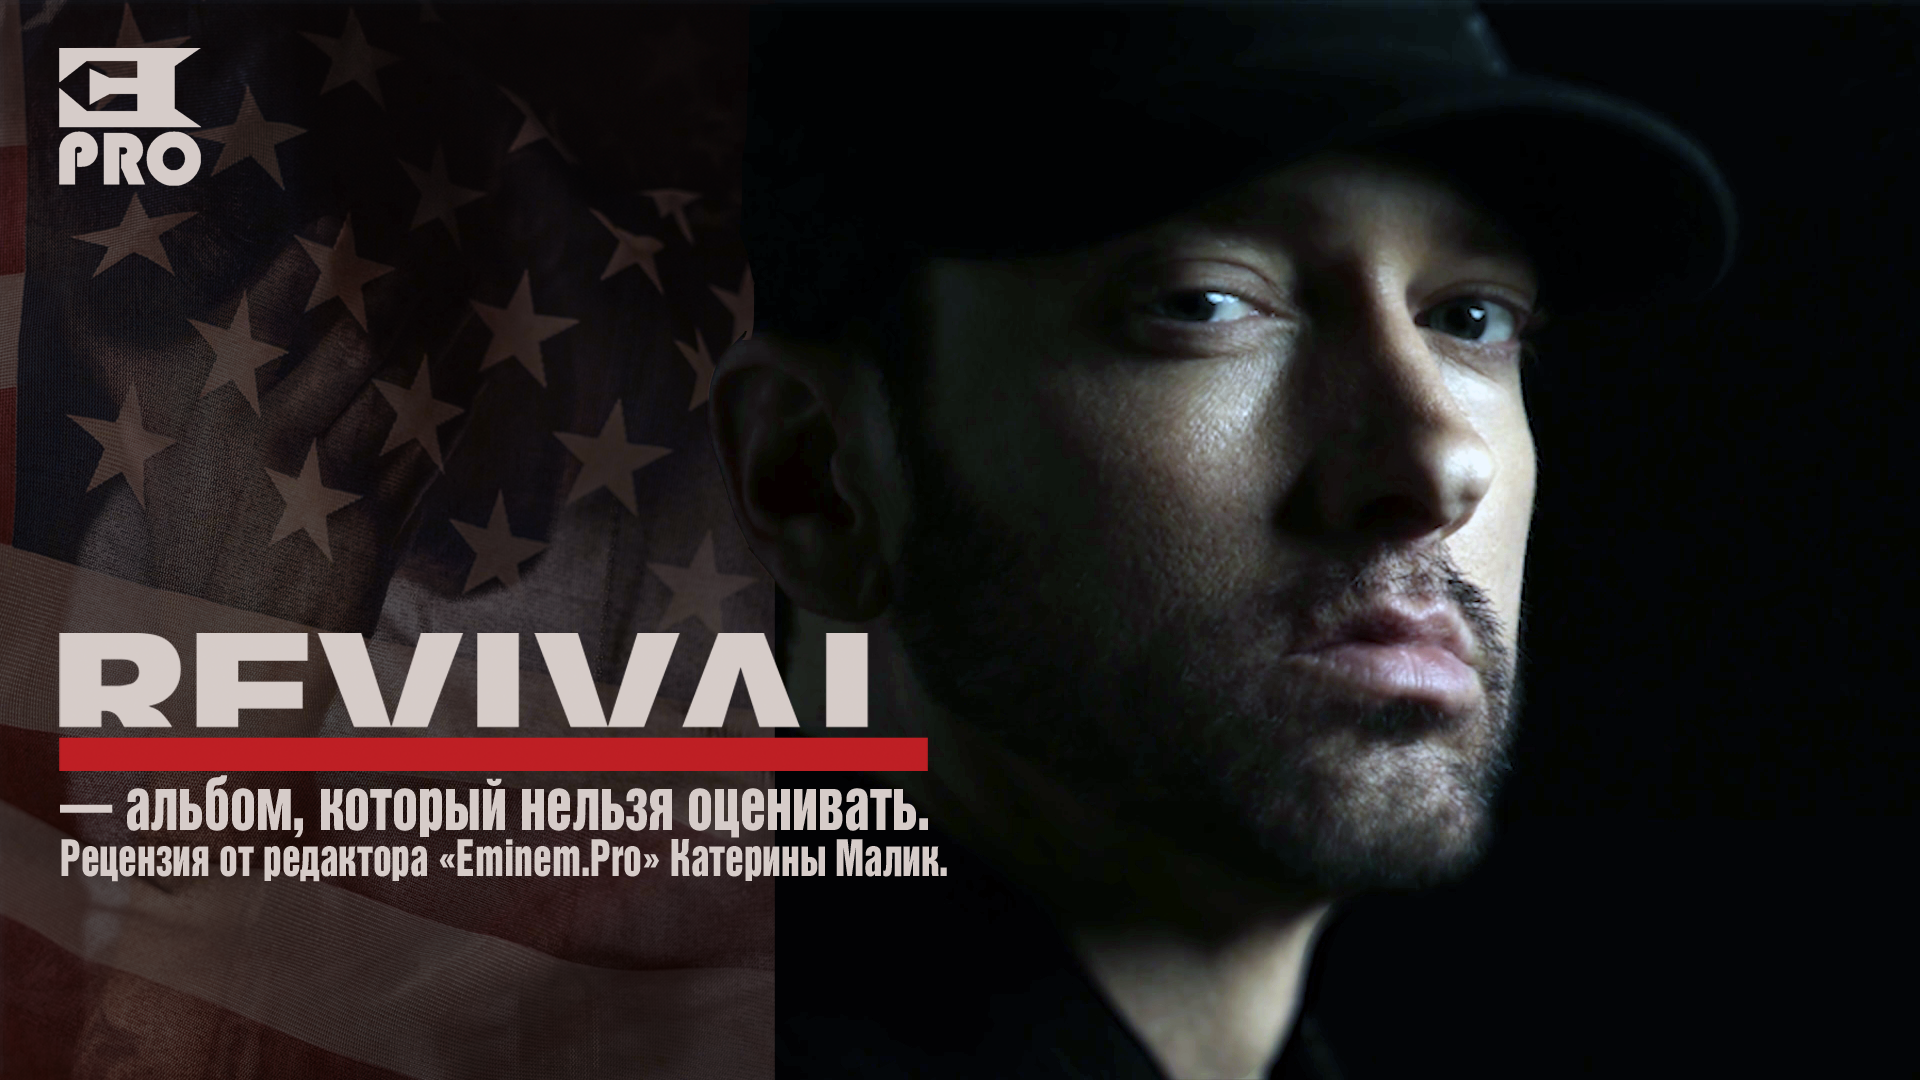 «Revival» - альбом, который нельзя оценивать. Рецензия от редактора «Eminem.Pro»